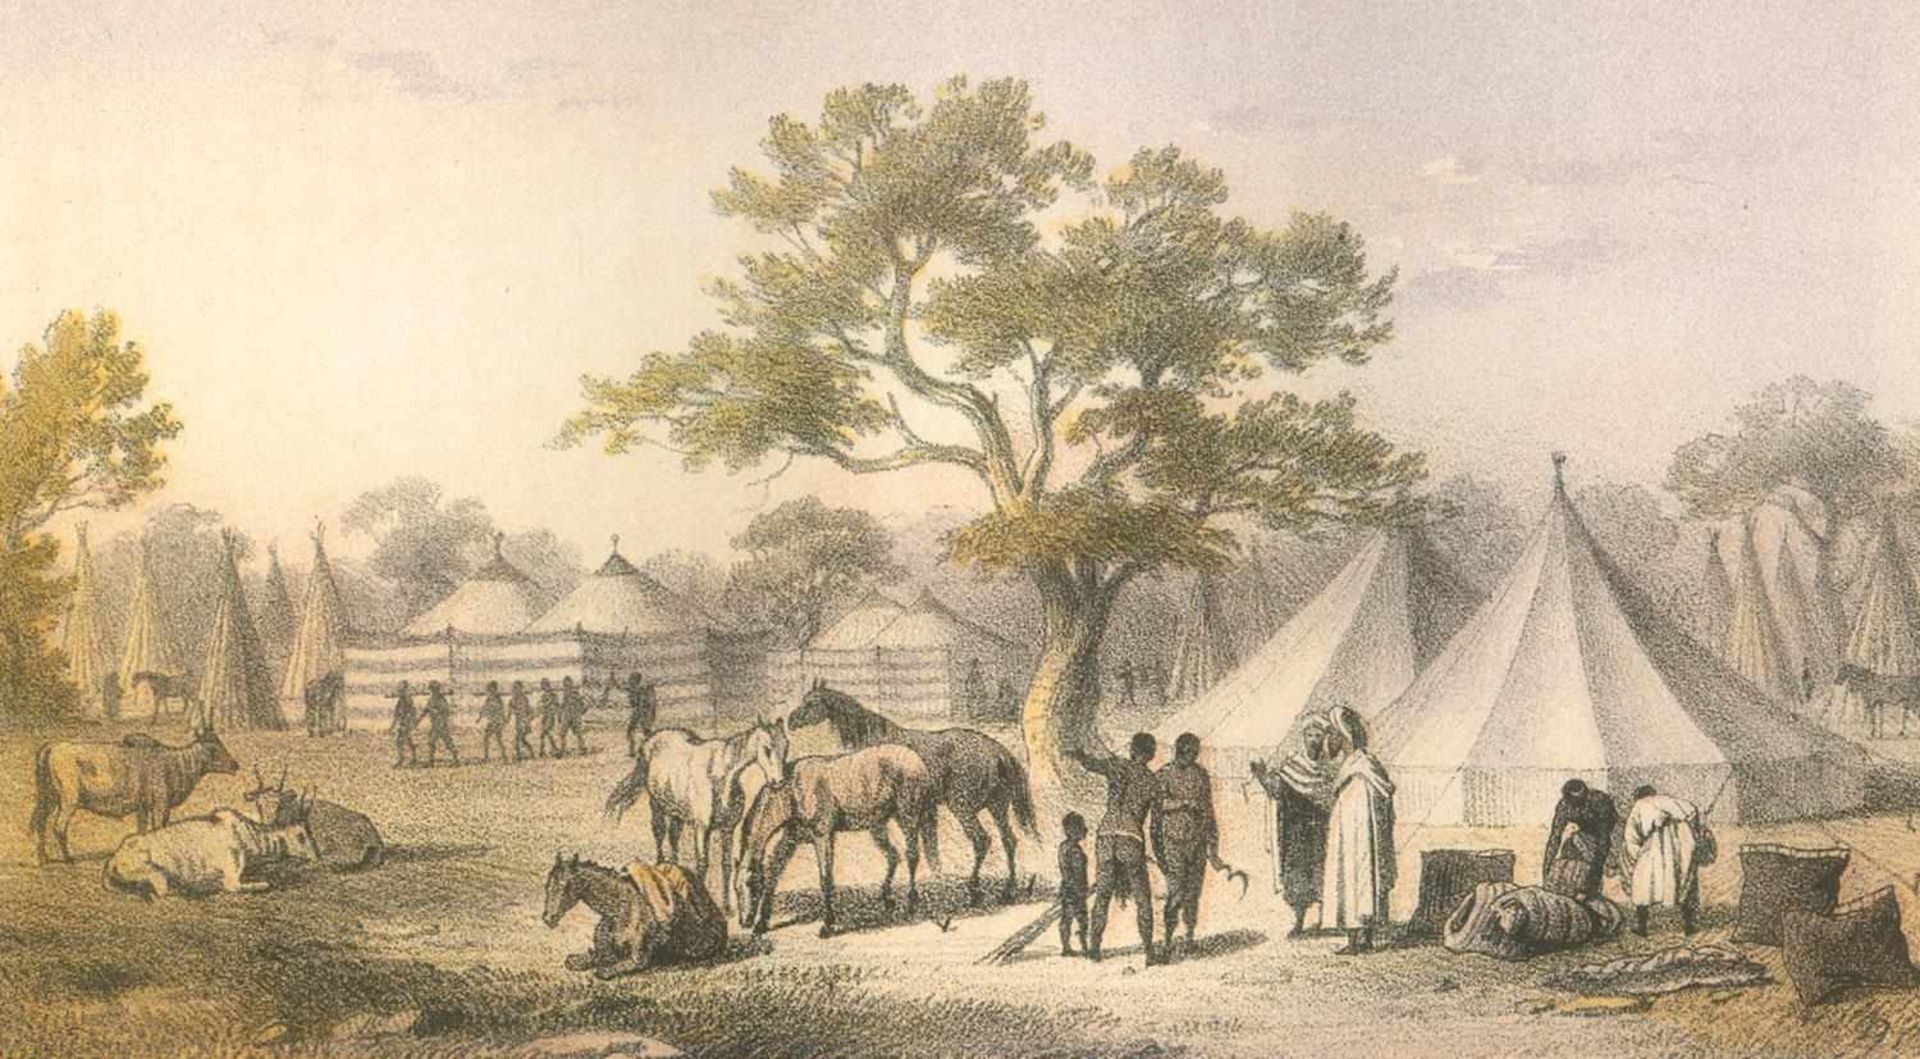 Barth,H.Reisen und Entdeckungen in Nord- und Central-Afrika in den Jahren 1849-1855. 5 Bde. (Bd. 1 - Bild 4 aus 4